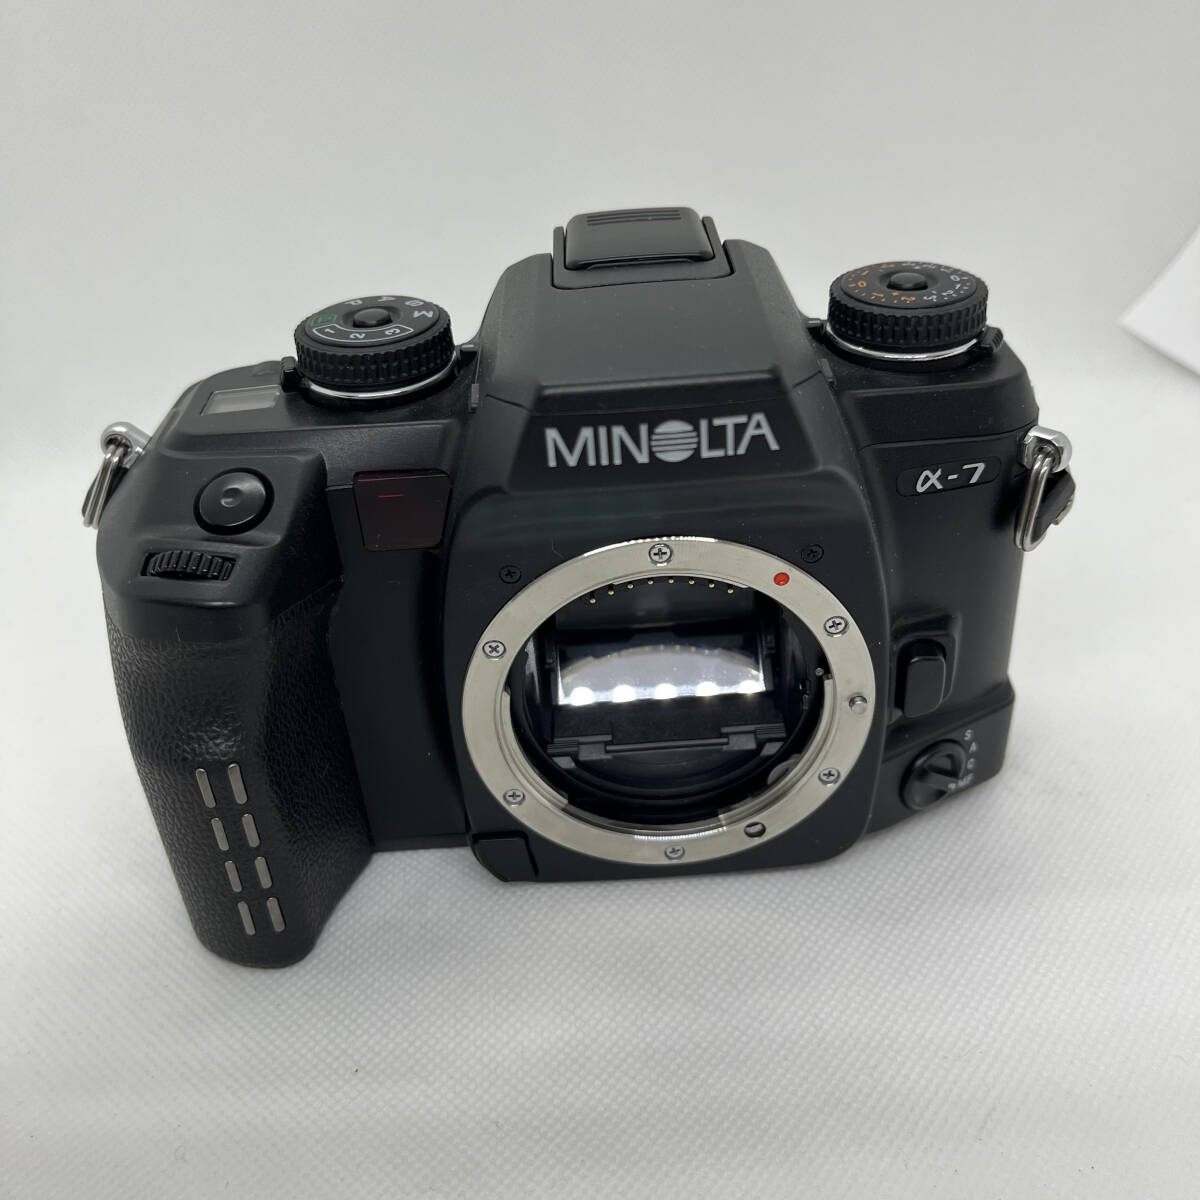 【送料無料 234405】MINOLTA ミノルタ α-7 フィルムカメラ 光学機器 動作未確認 現状品の画像1